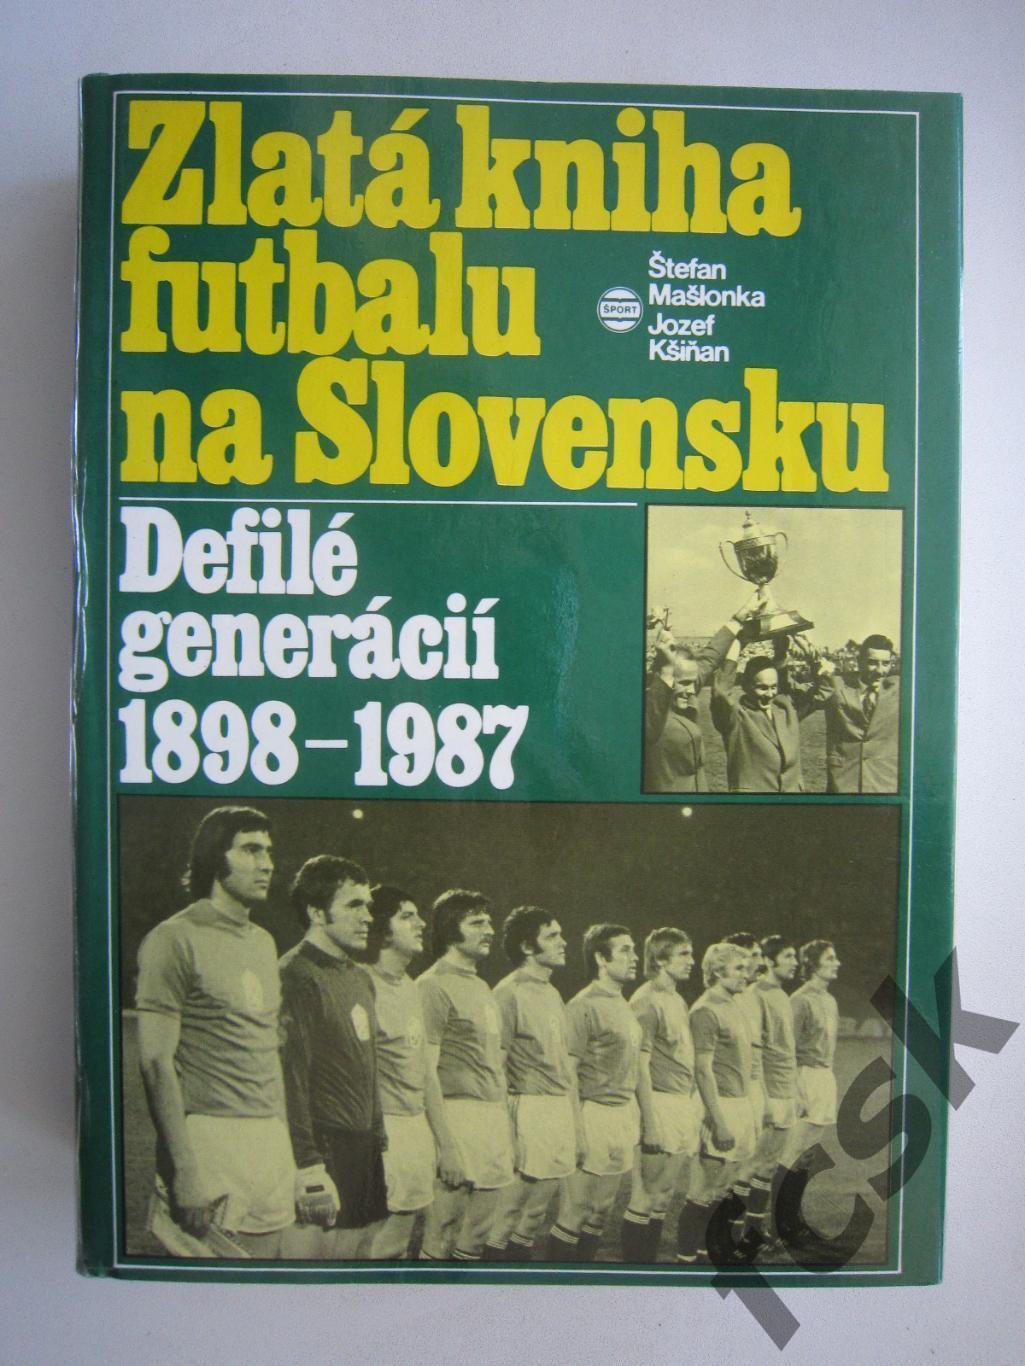 Золотая книга футбола Словакии 1898-1987